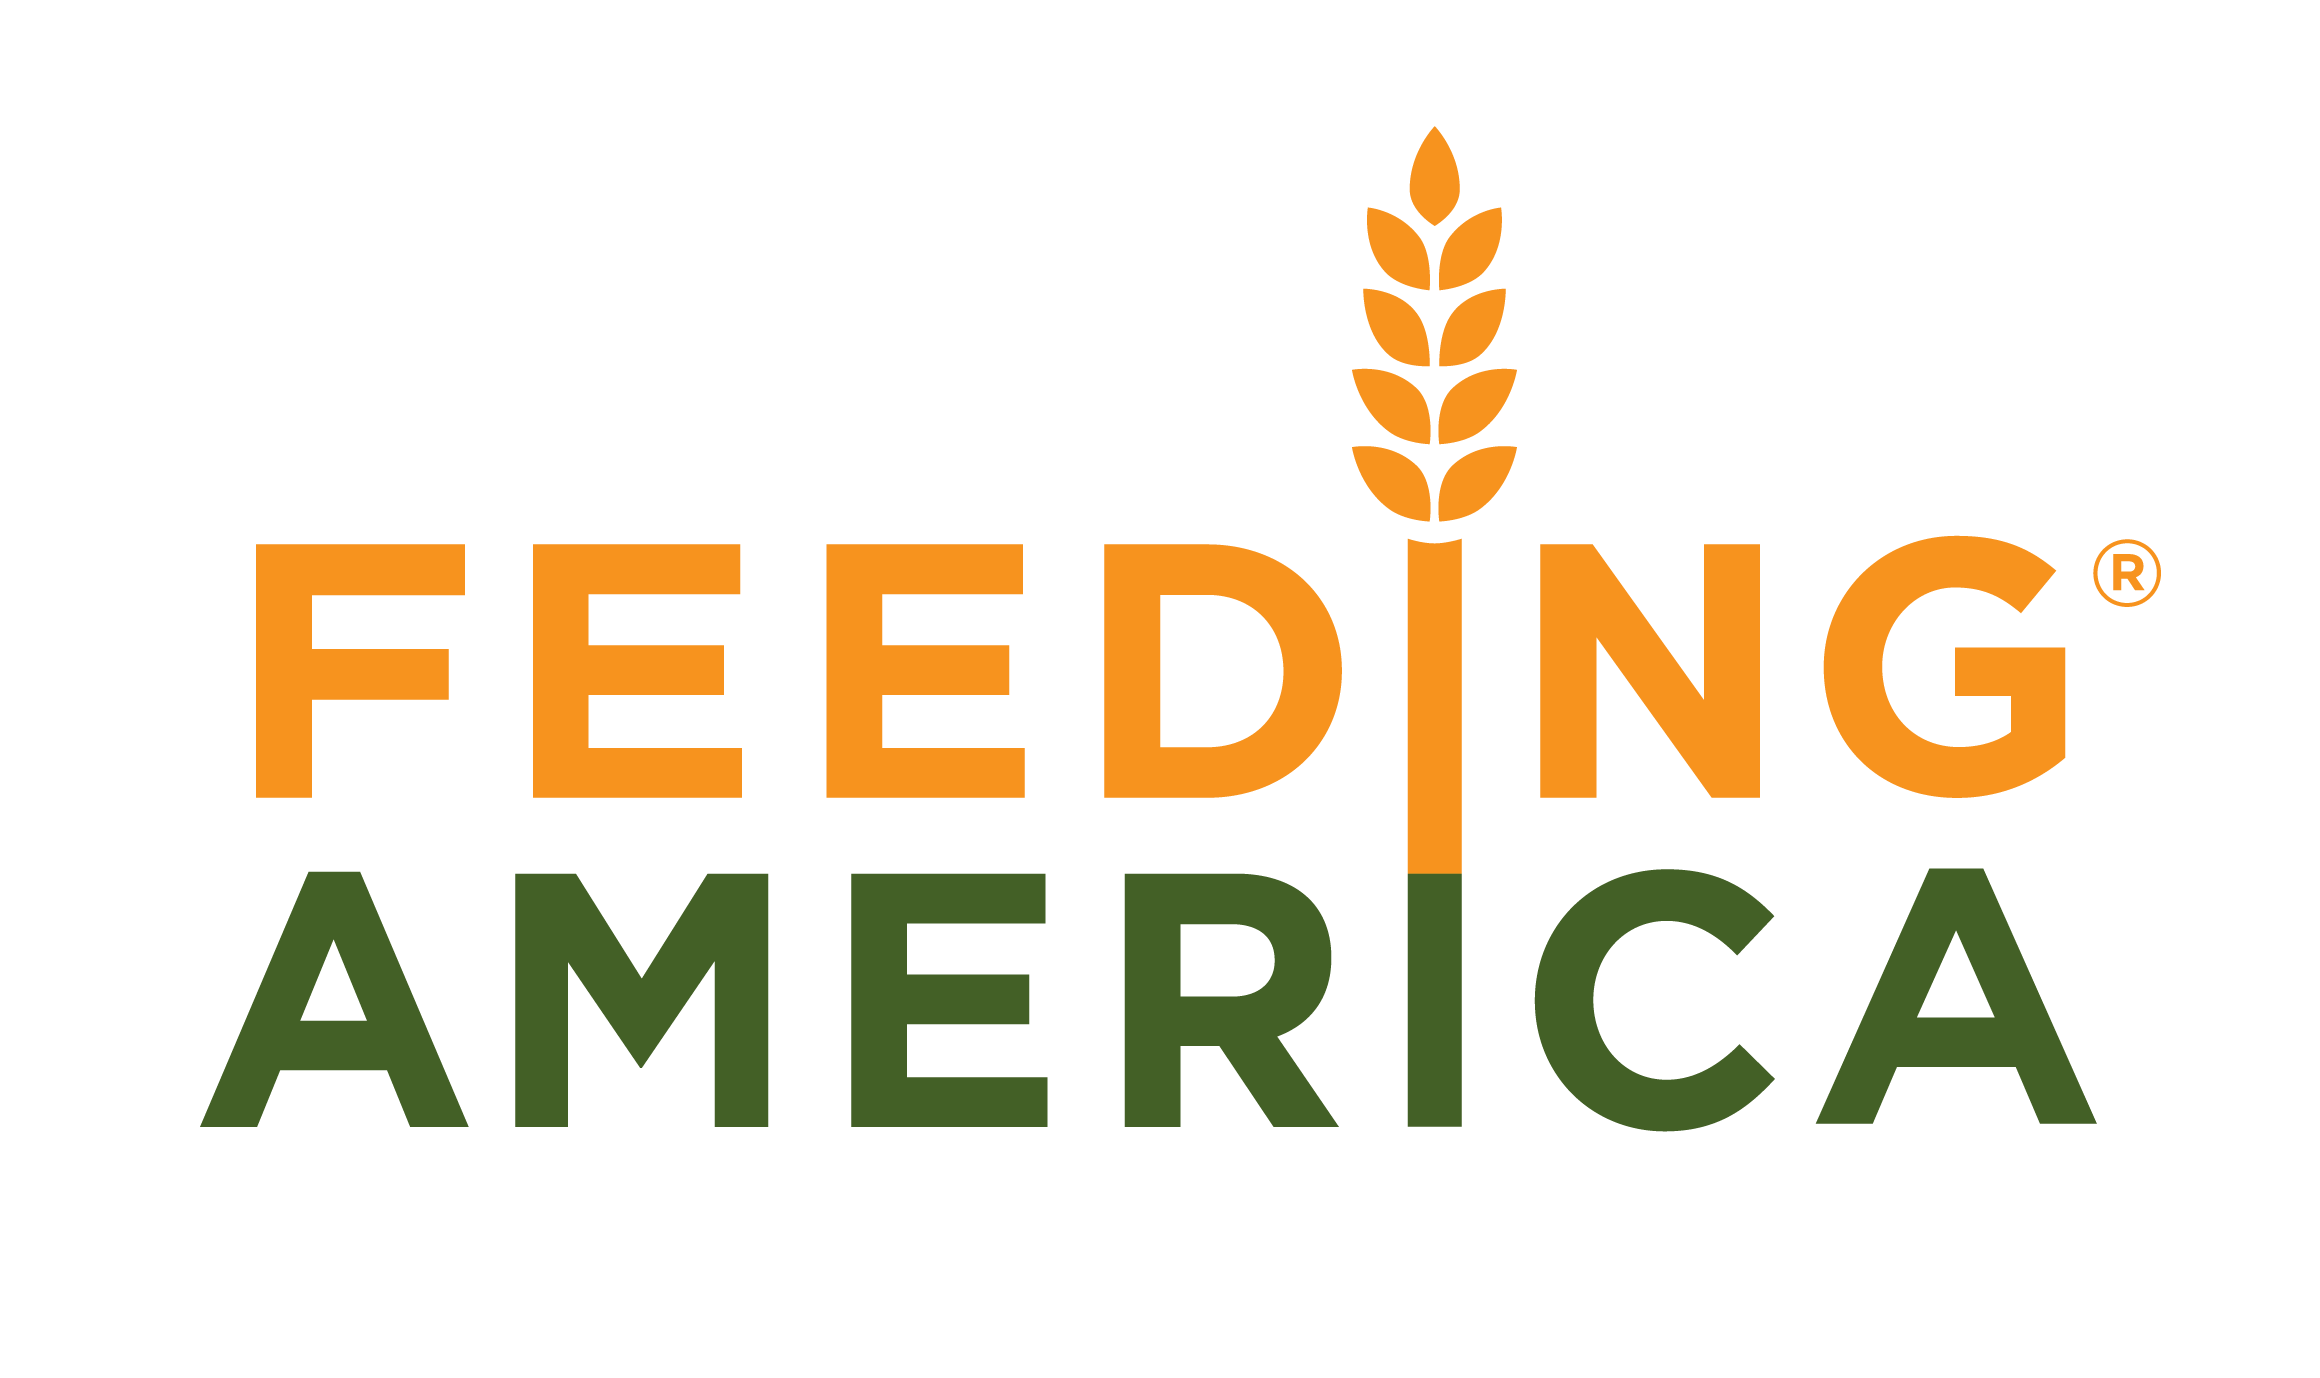 teamfeed.feedingamerica.org